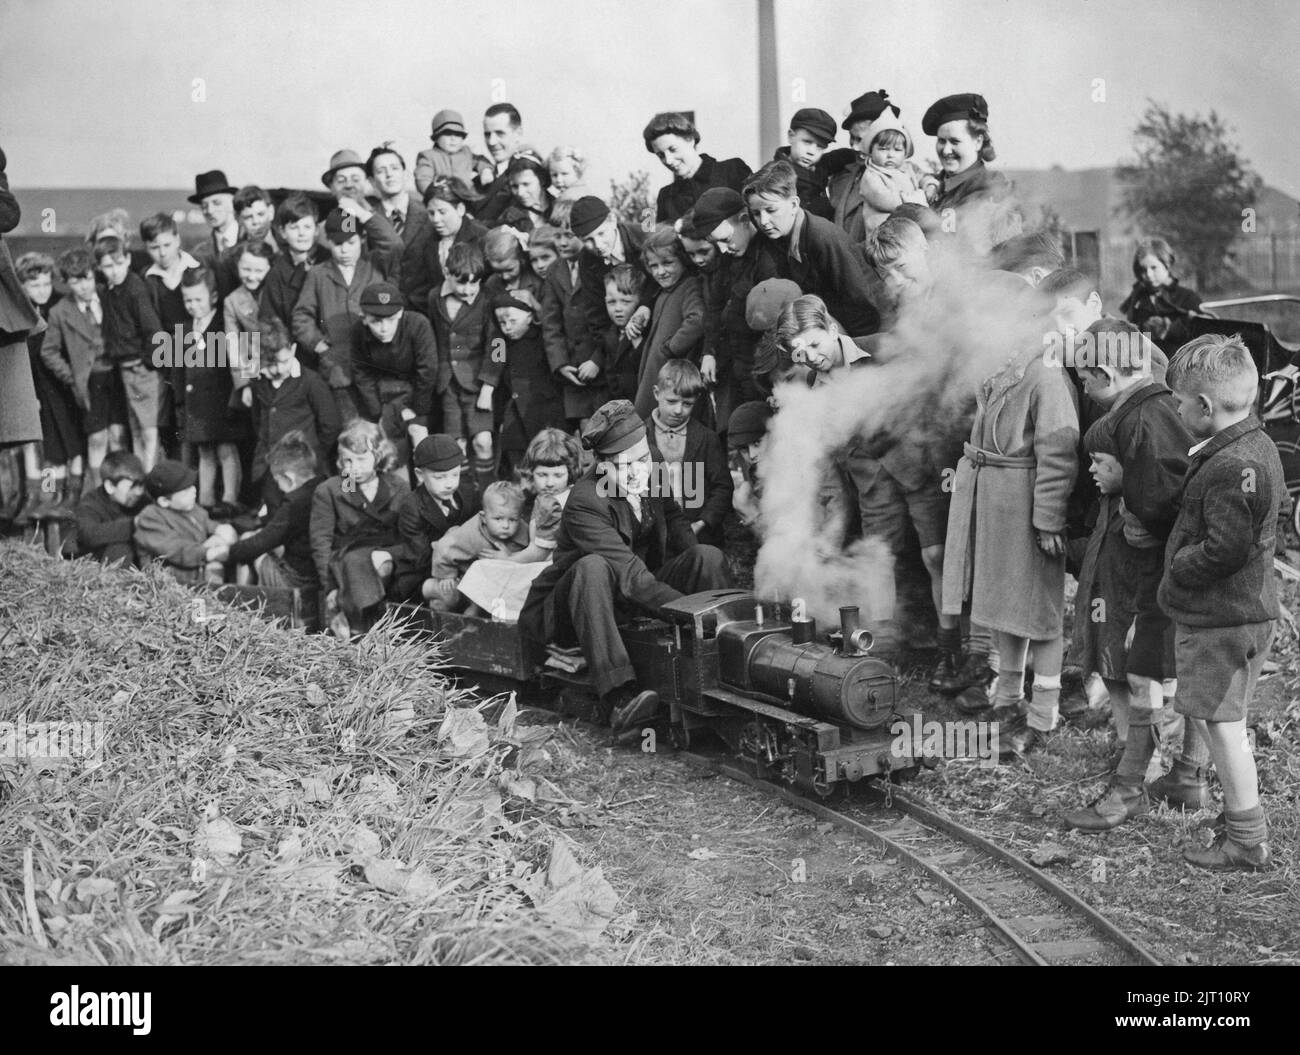 Tren en miniatura. El inglés Jim Haughton ha construido su propio ferrocarril en miniatura y locomotora de vapor en su jardín en la villa Stockport fuera de Chshire. La imagen le muestra operando con niños que viajan en los vagones detrás de él. 1944 Foto de stock